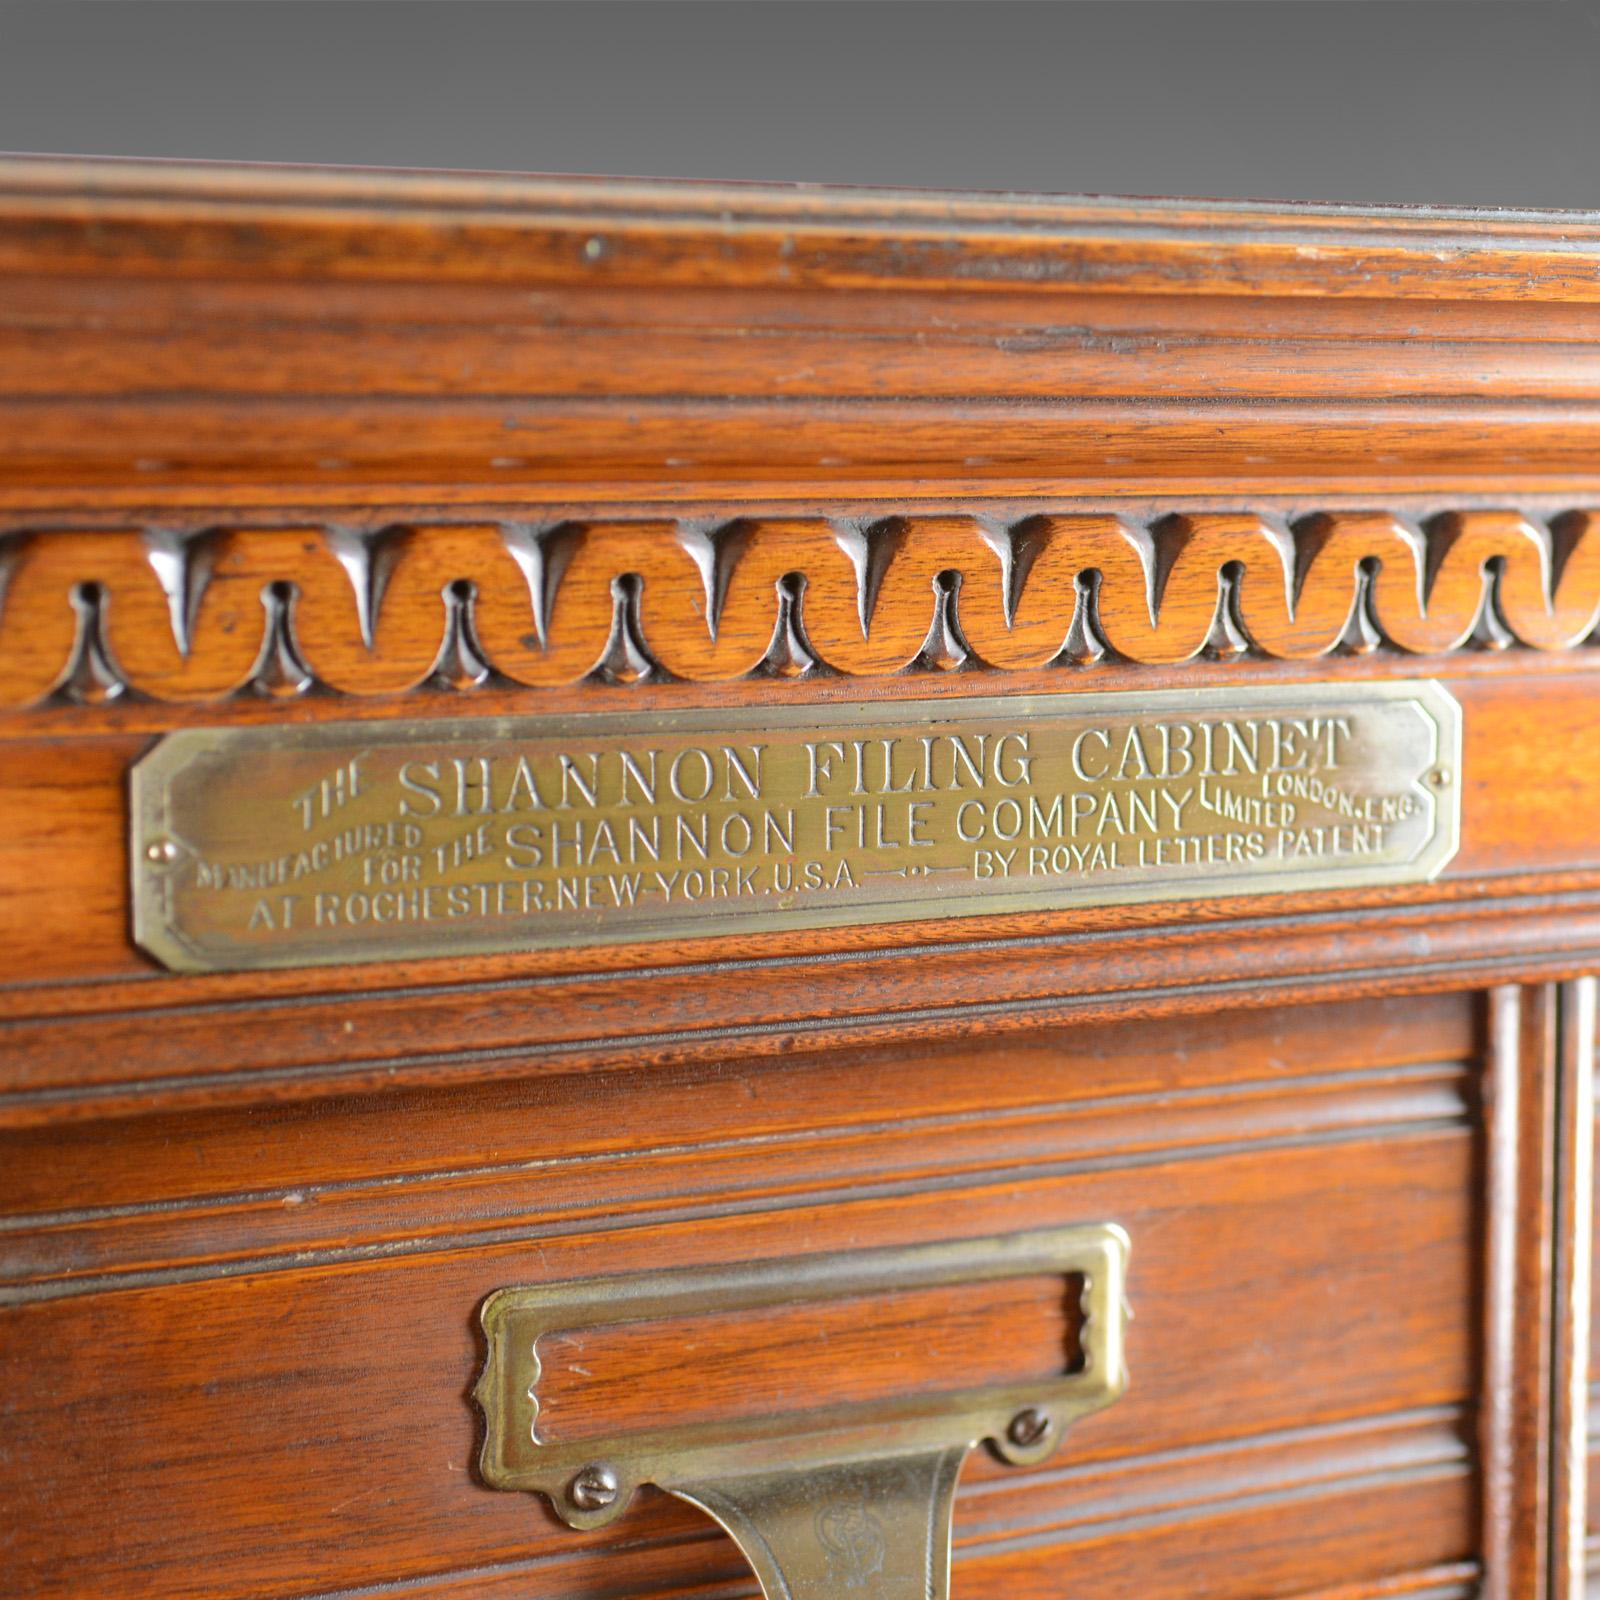 20th Century Large Antique Filing Cabinet, English, Edwardian, Walnut, Shannon File Co.